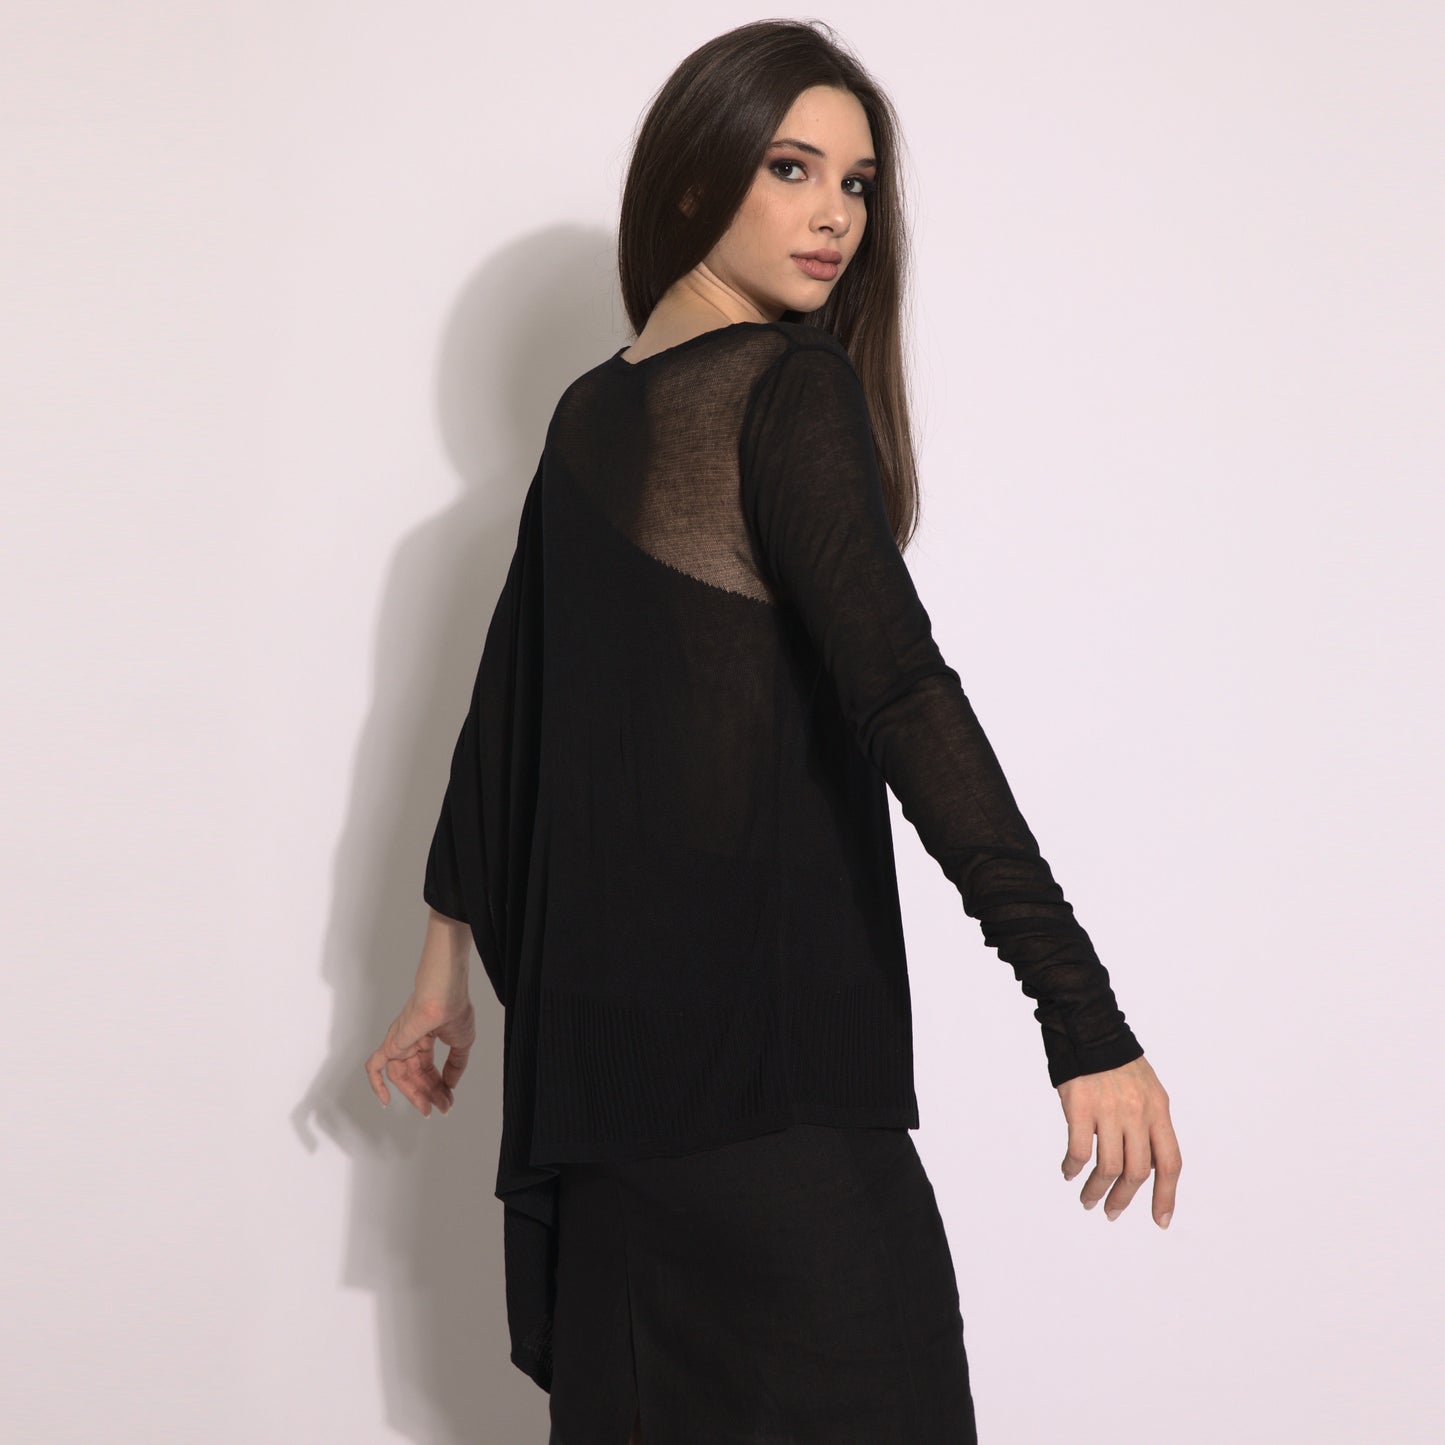 Kaya - Blusa de tricot assimétrica na cor preta com transparencia